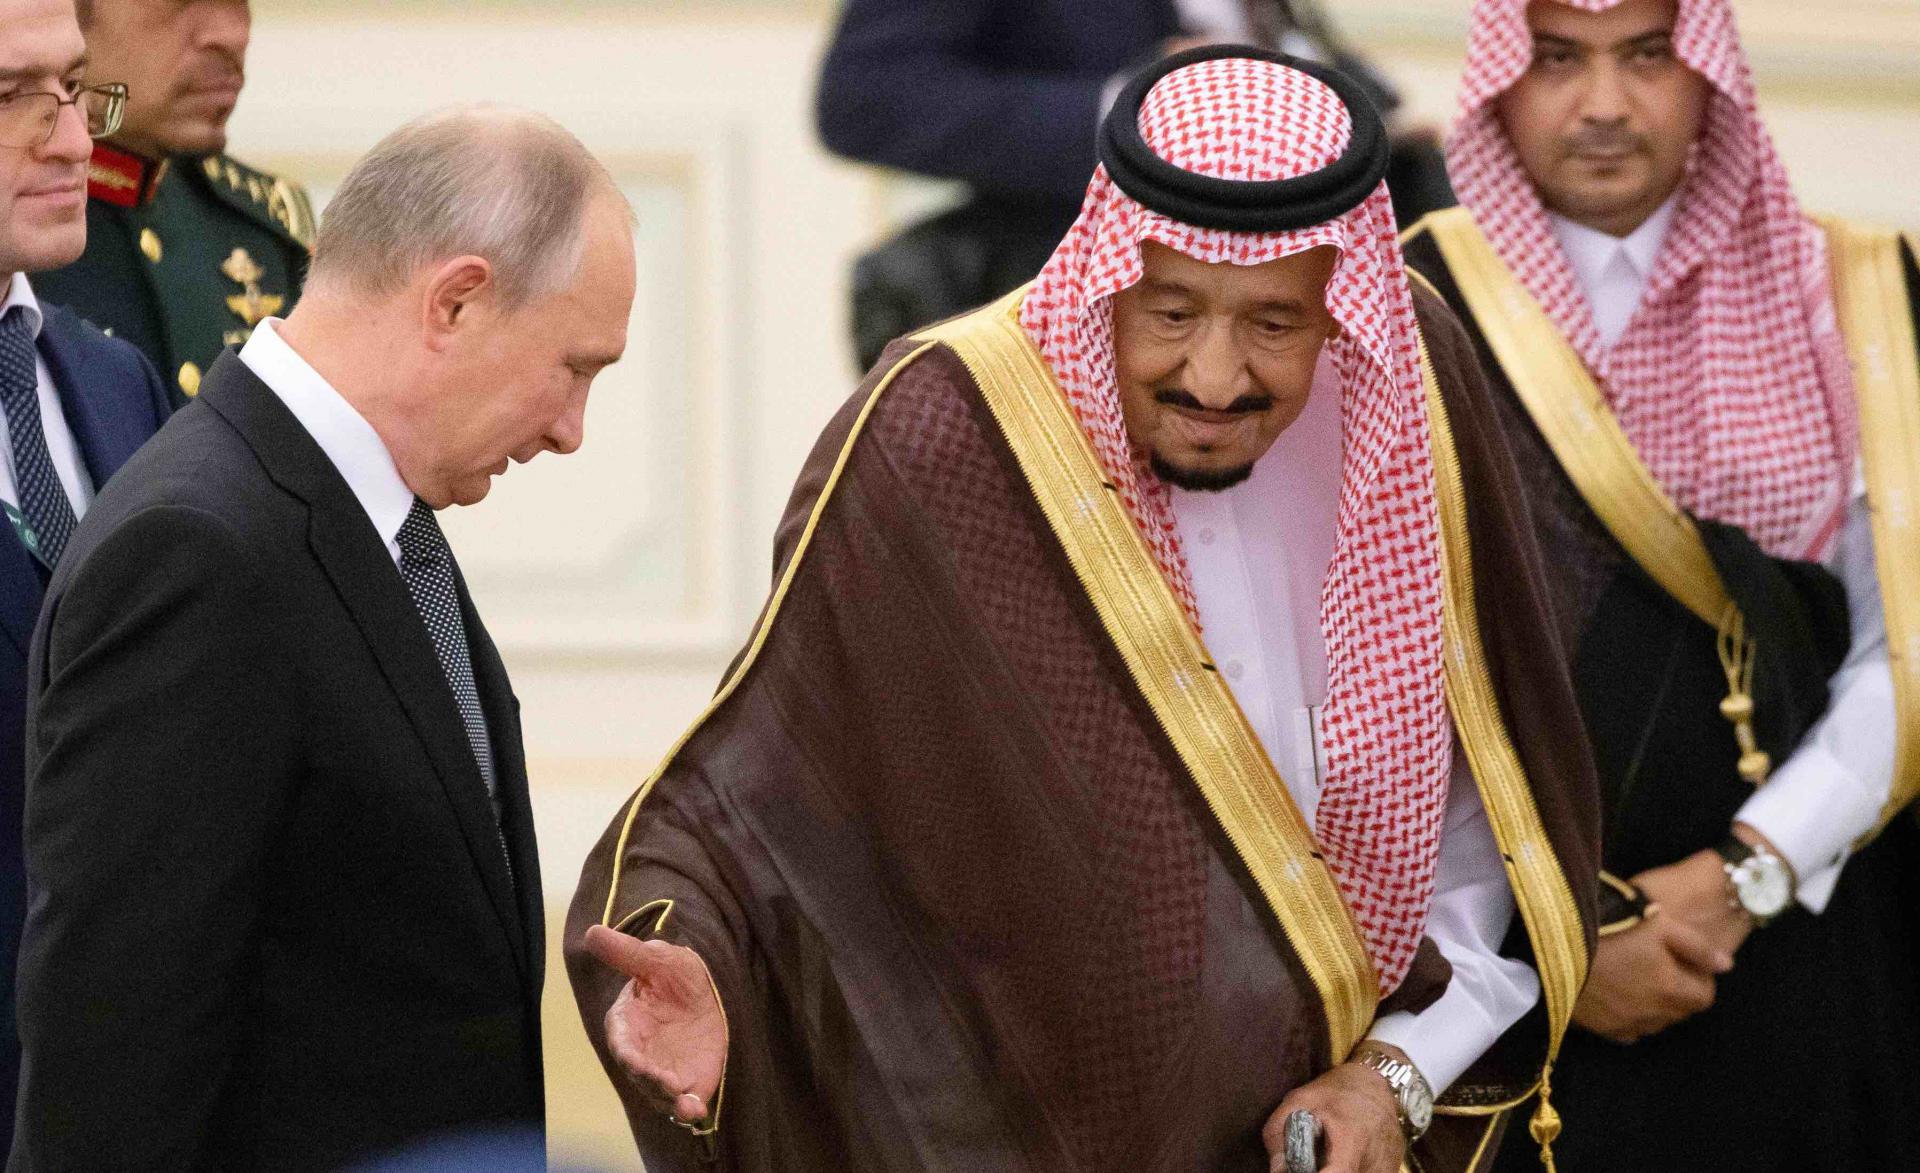 Putin's visit follows attacks on Saudi oil installations